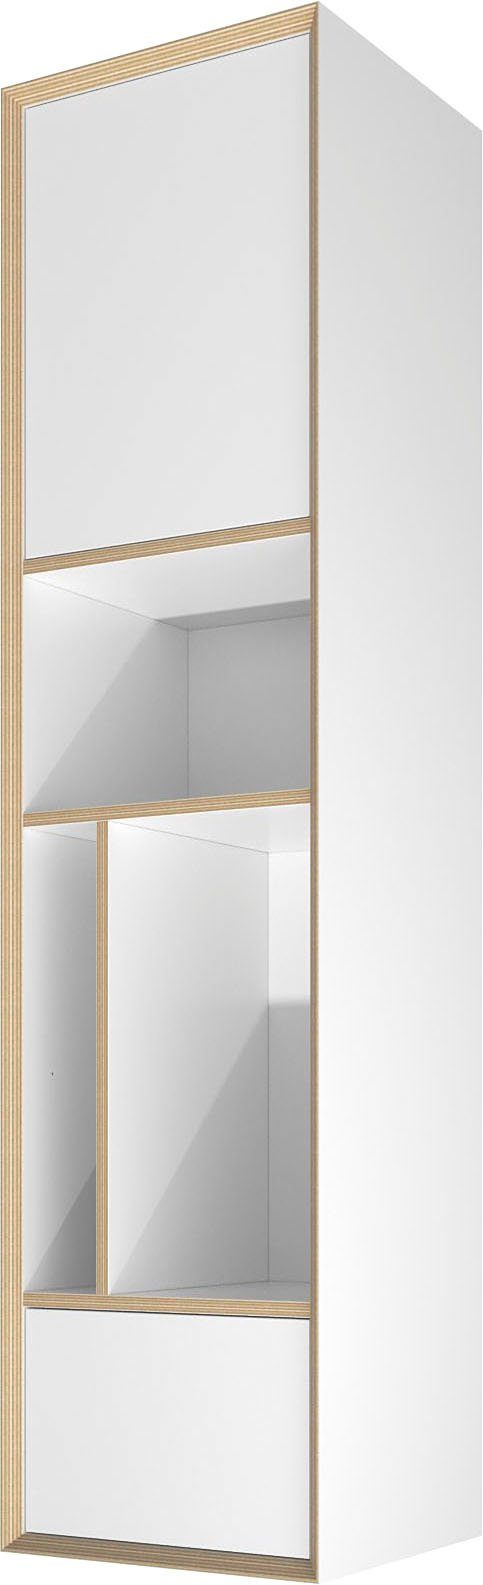 Müller SMALL LIVING Serie Mehrzweckschrank Wohnwand zur VERTICO VERTICAL Vertiko, kombinierten Bau zum ONE einer weiß Hochschrank